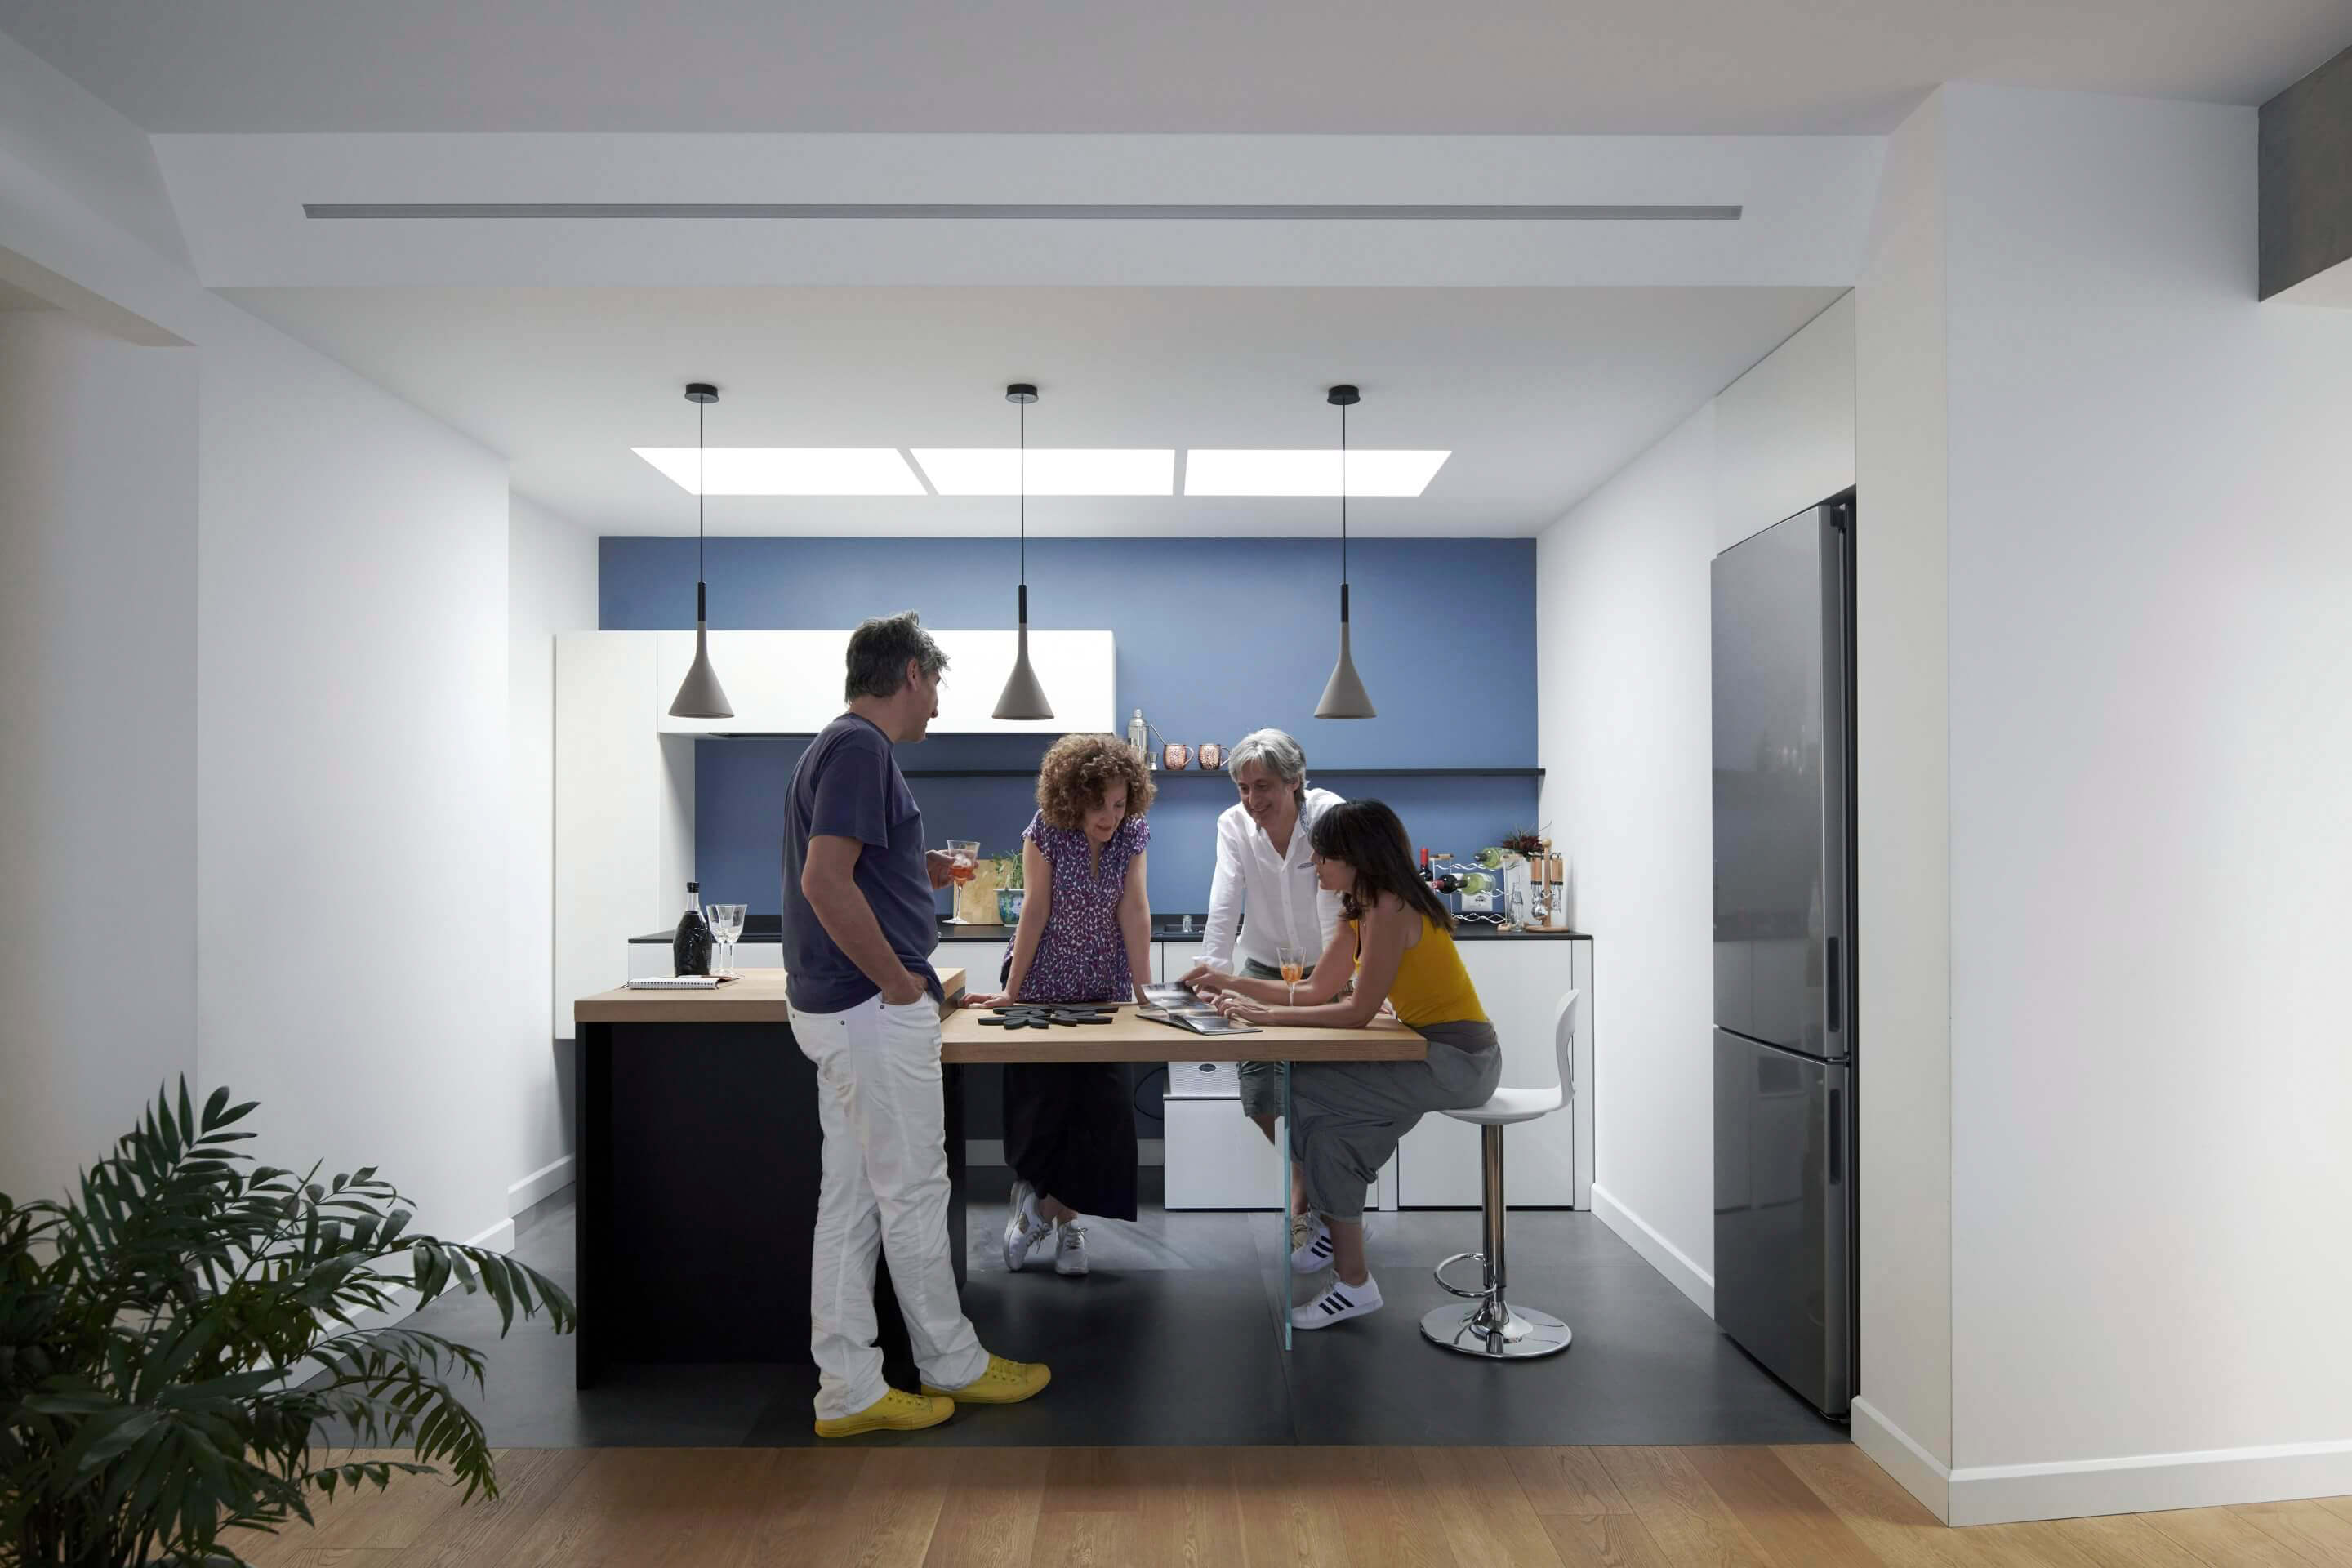 Renforcement des liens familiaux dans une cuisine moderne avec une fenêtre de toit VELUX et une décoration élégante.